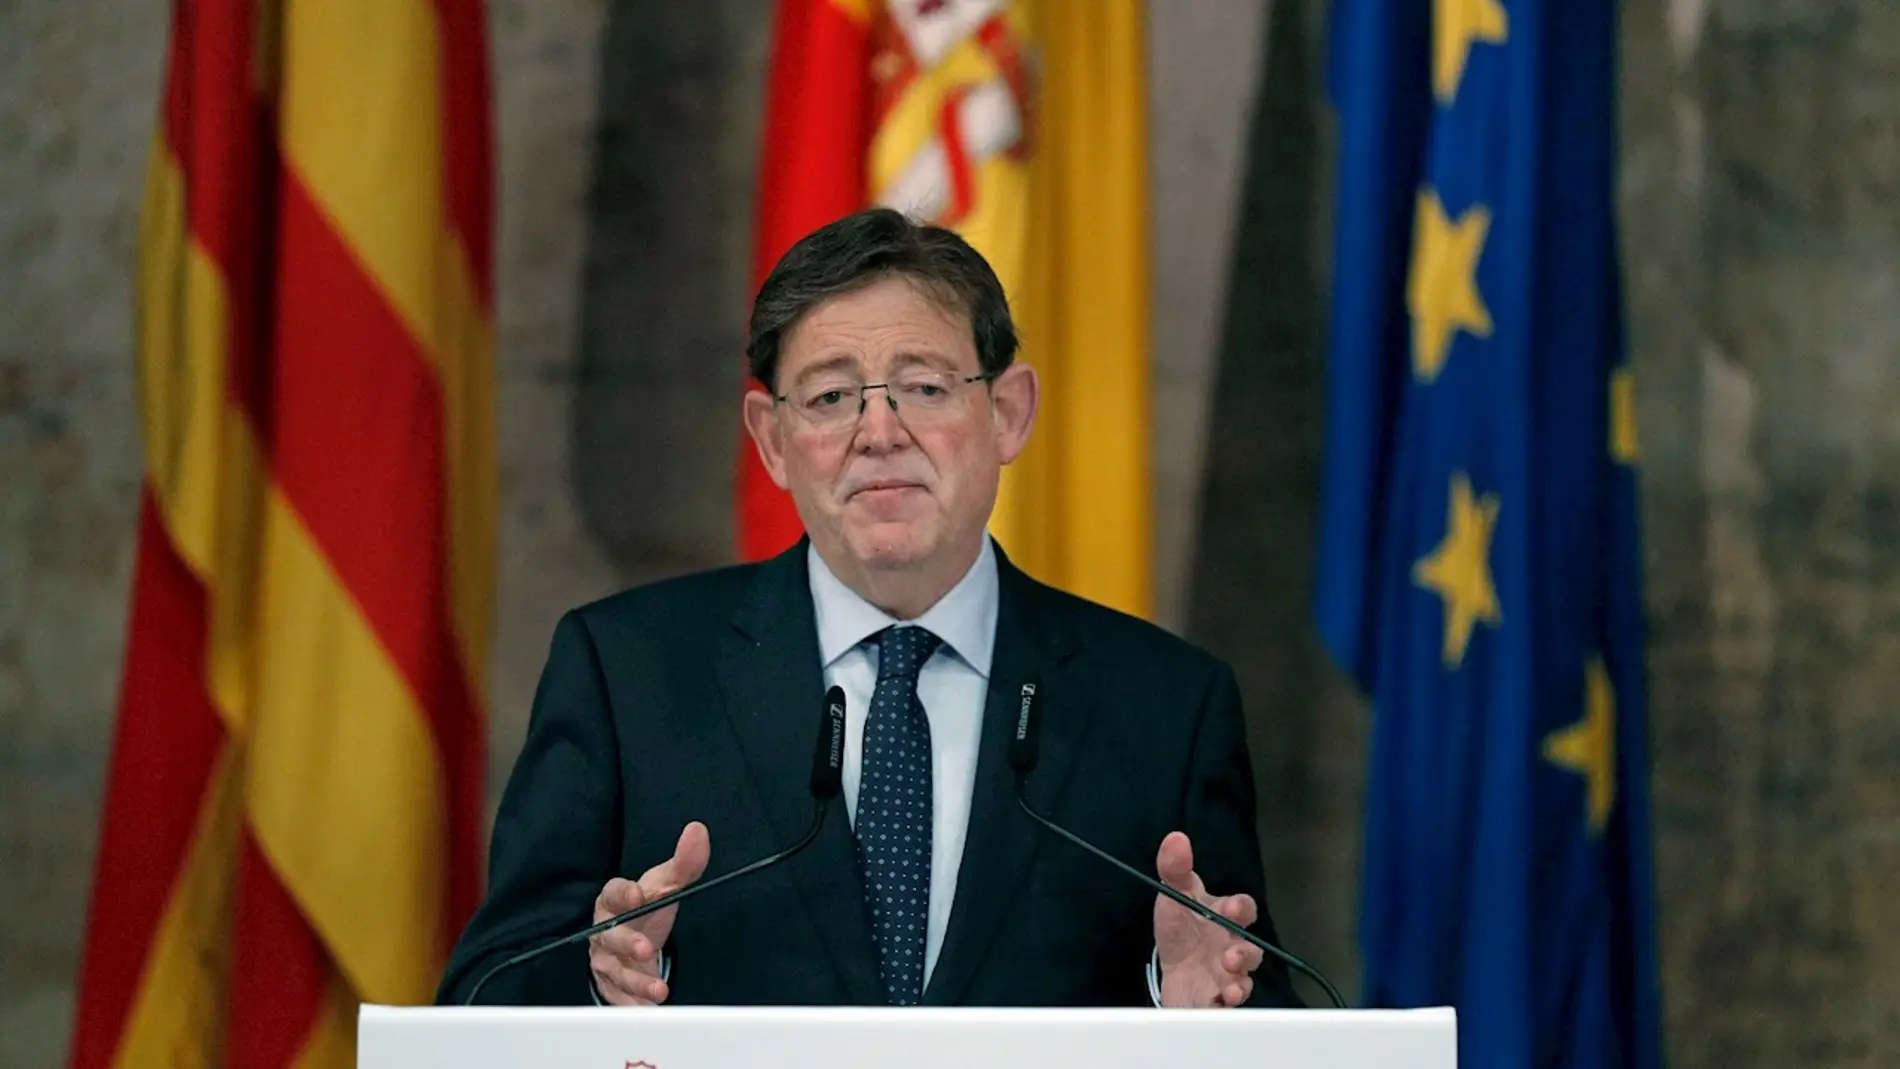 Ximo Puig explica restricciones en la Comunidad Valenciana